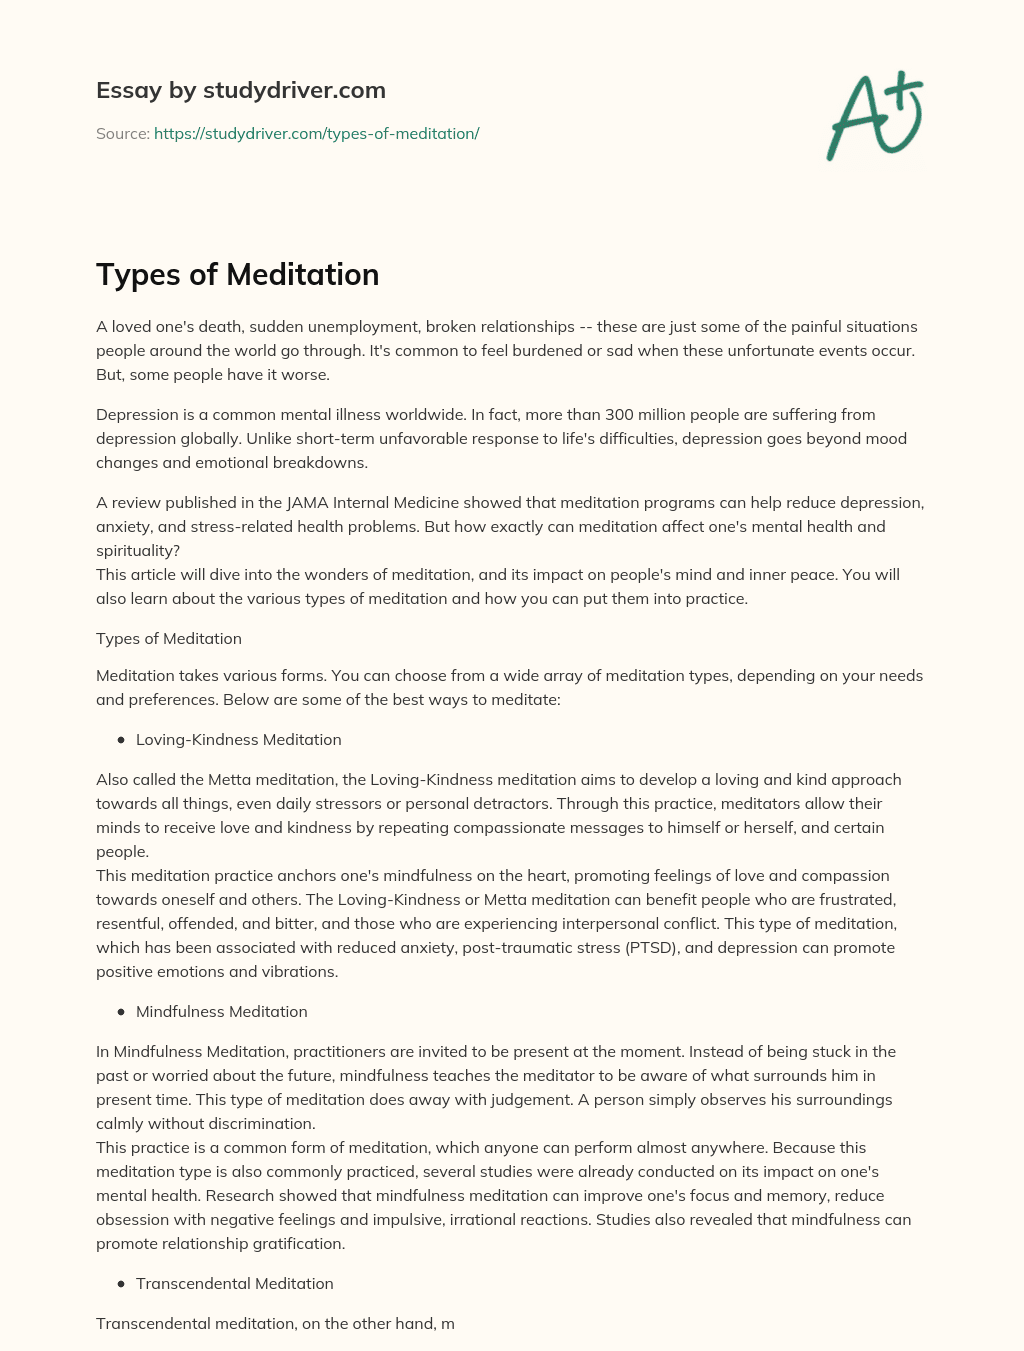 Types of Meditation essay